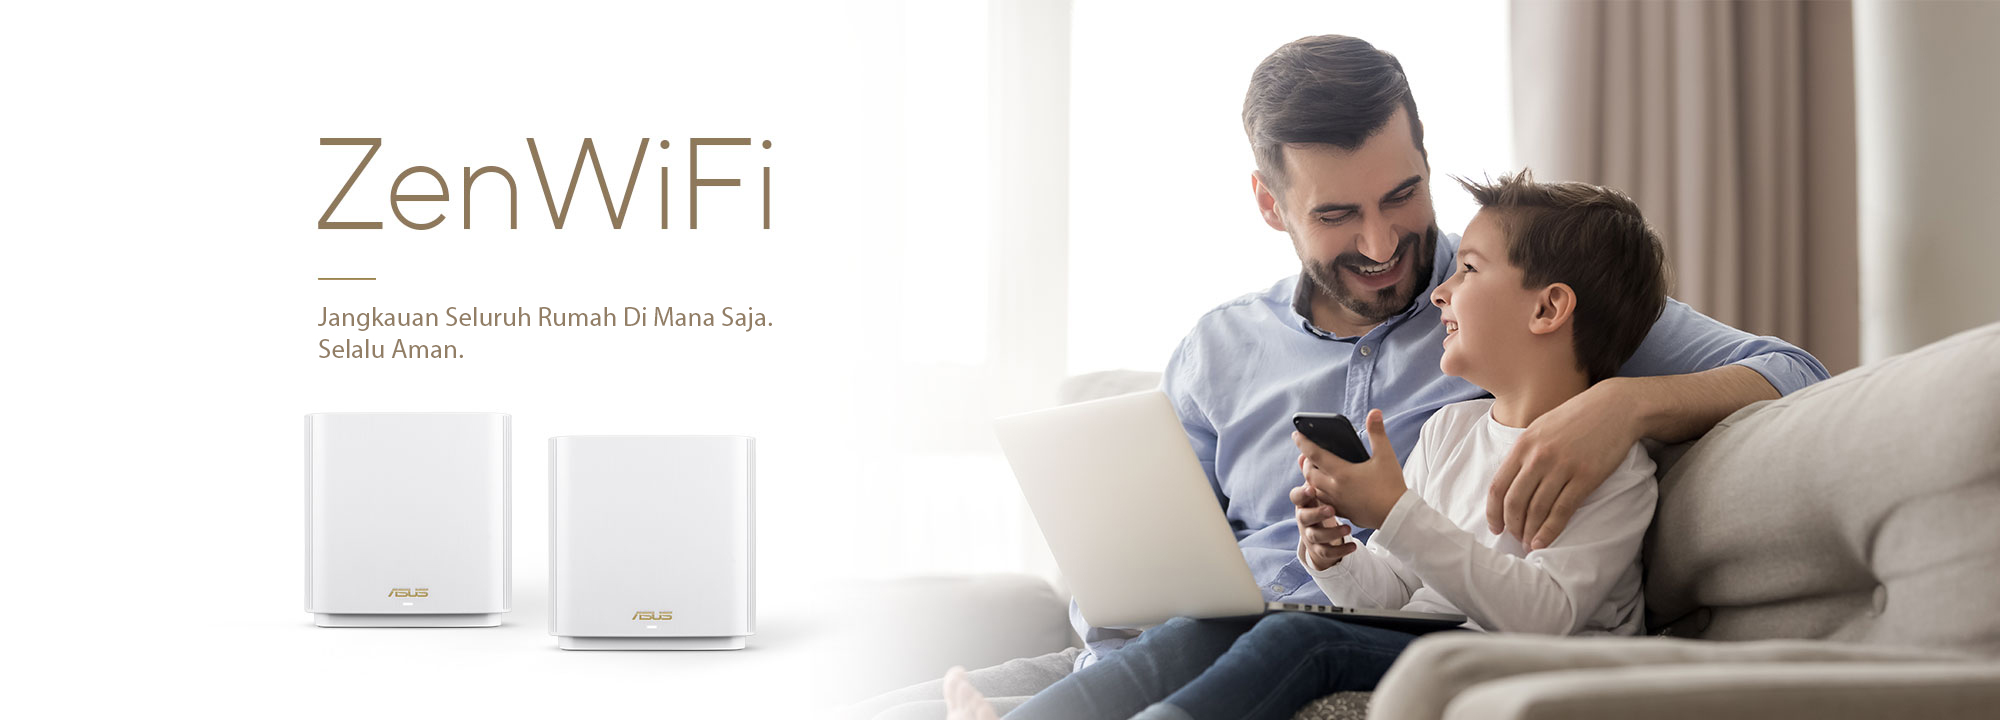 ASUS ZenWiFi merupakan sistem WiFi mesh seluruh rumah yang terbaik, yang menghadirkan konektivitas WiFi cepat dan stabil untuk semua perangkat Anda.